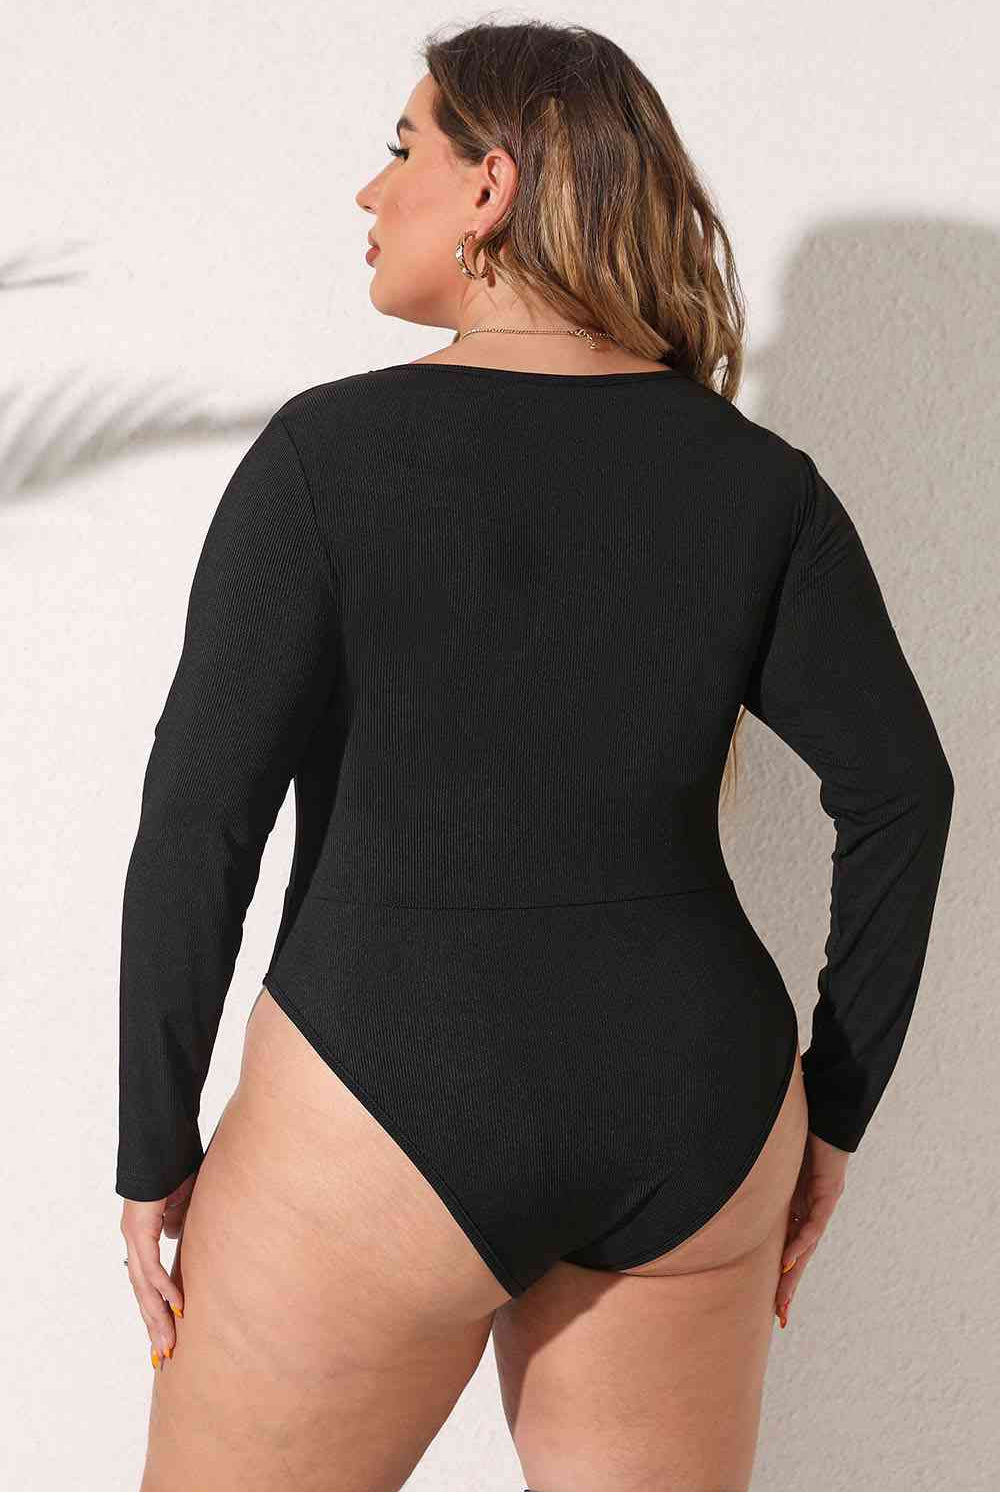 Black Plus Size Round Neck Long Sleeve Bodysuit Plus Size Clothes